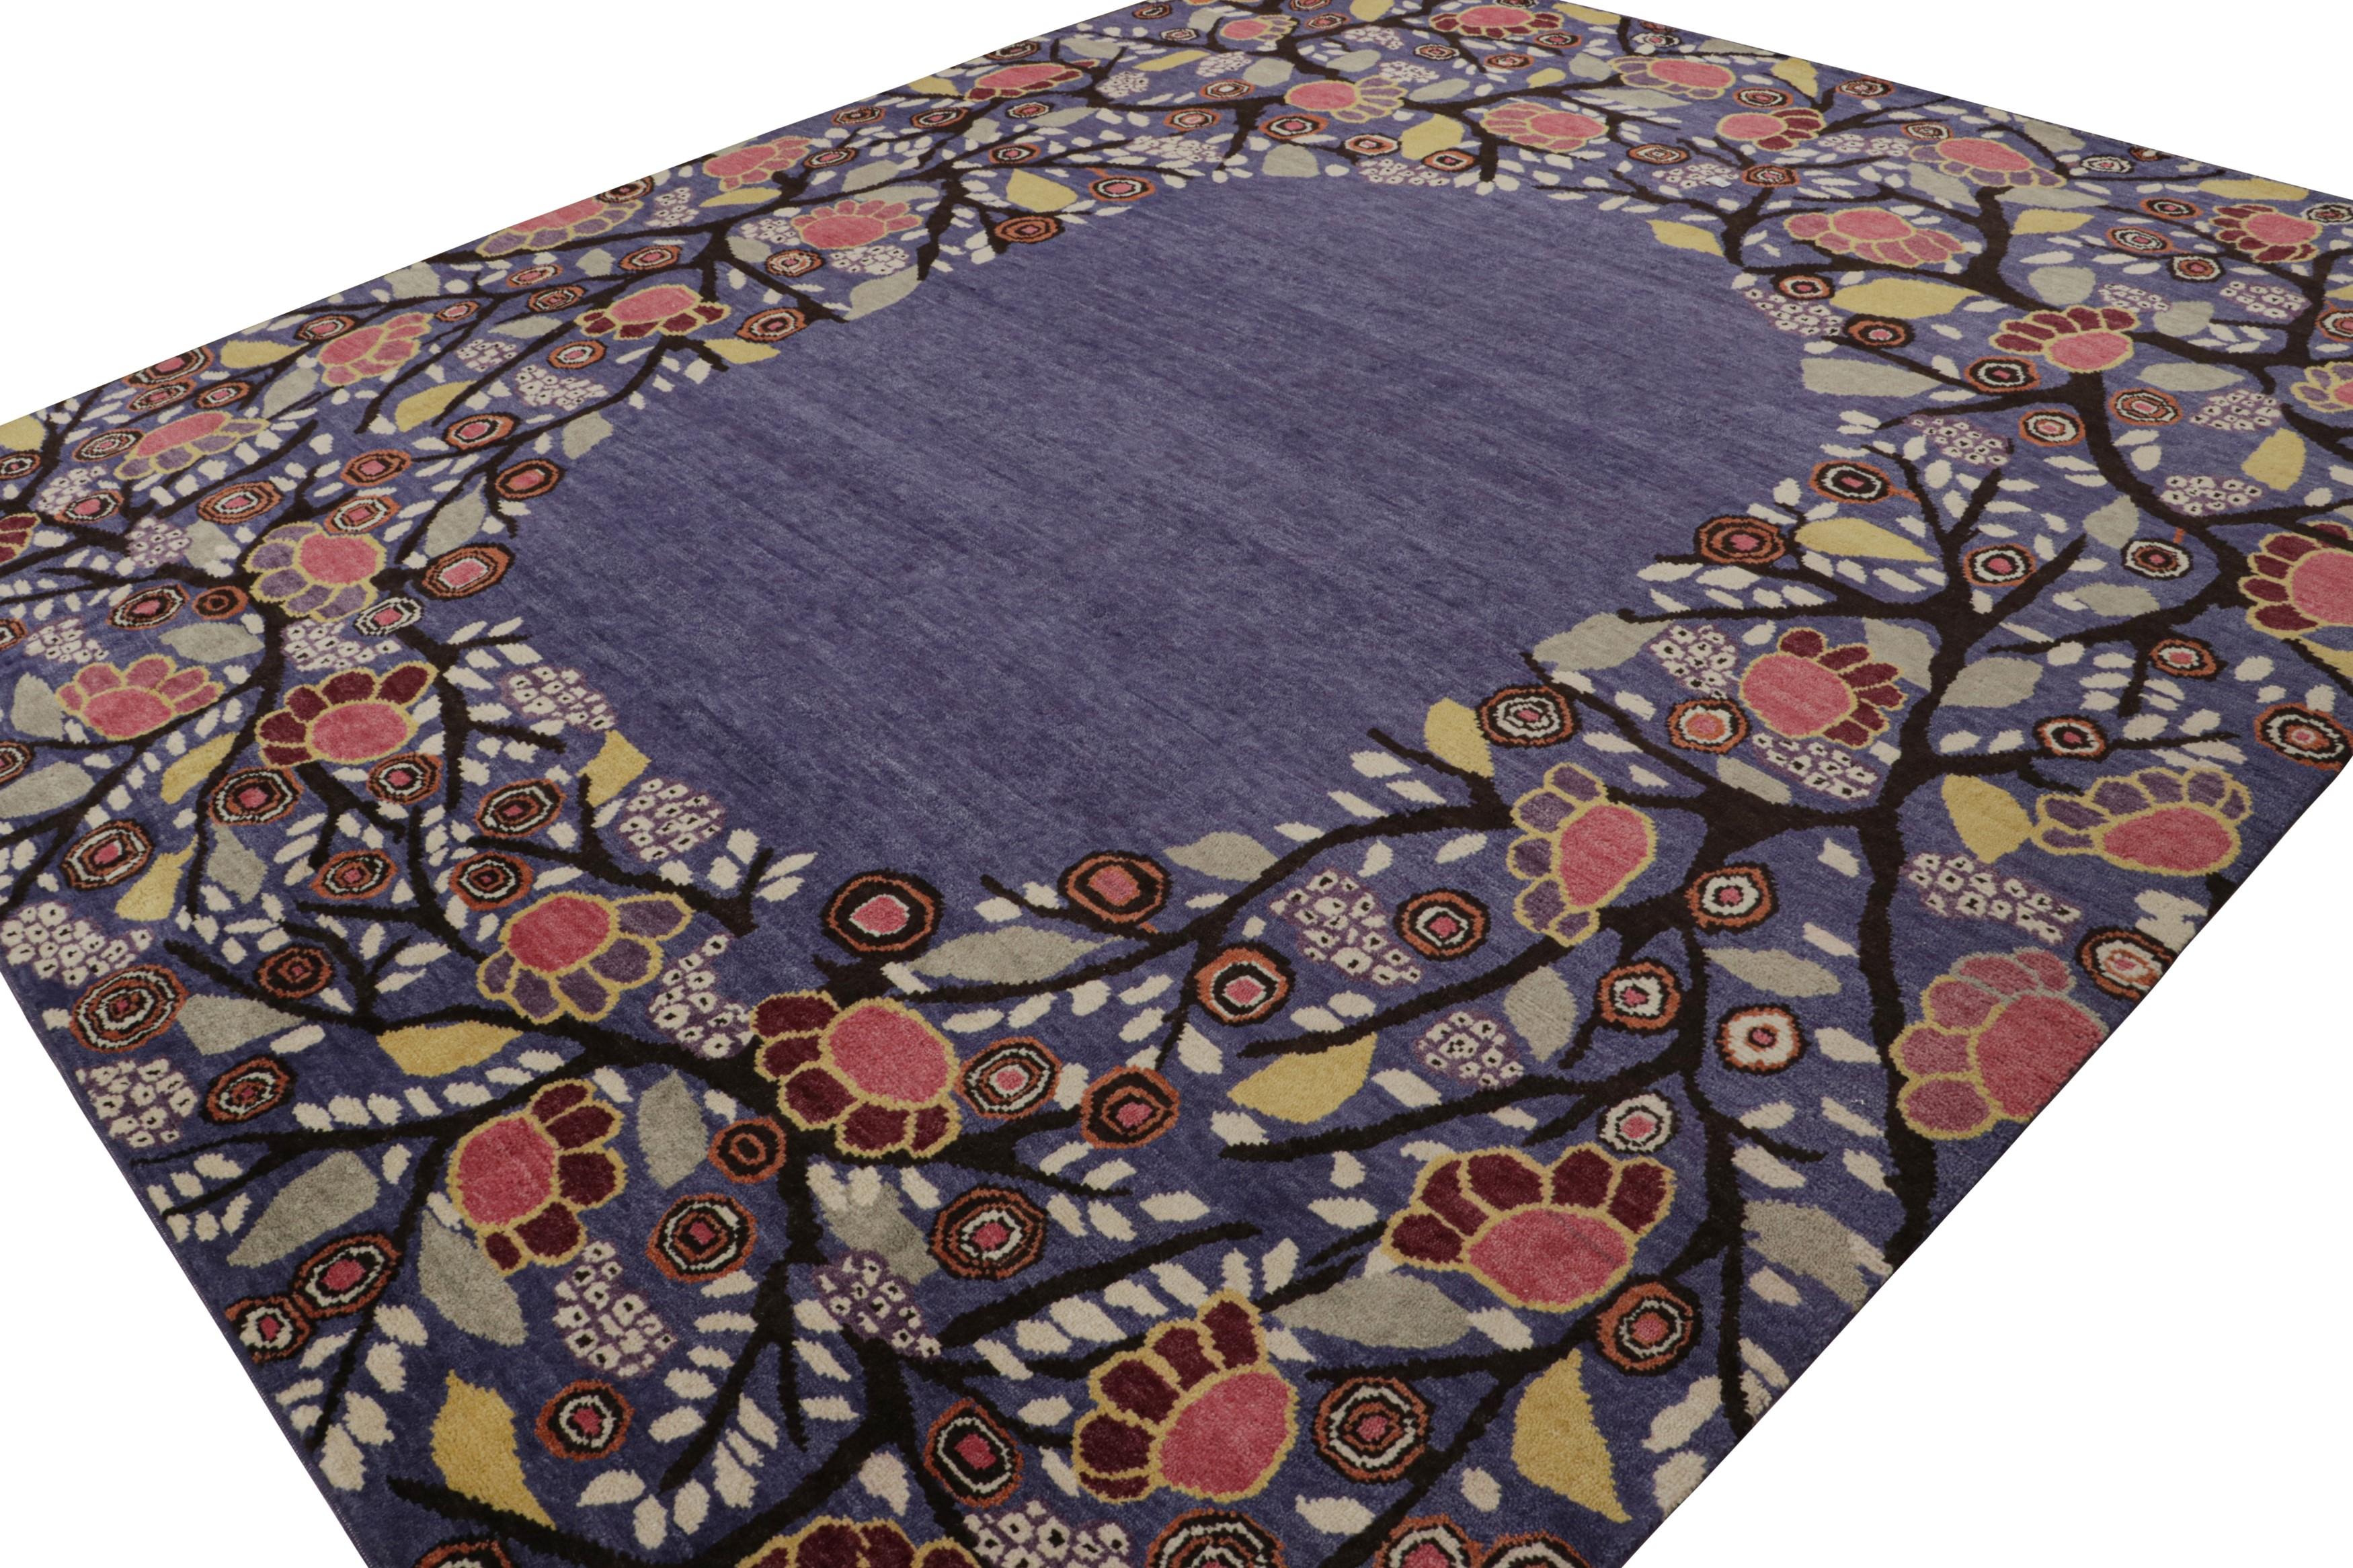 Cette ode 11x13 aux tapis Art déco français est le prochain ajout à la nouvelle collection Deco de Rug & Kilim. Noué à la main en laine.

Plus loin dans le Design :  

Cette pièce arbore le style déco des années 1920 avec de luxuriantes fleurs